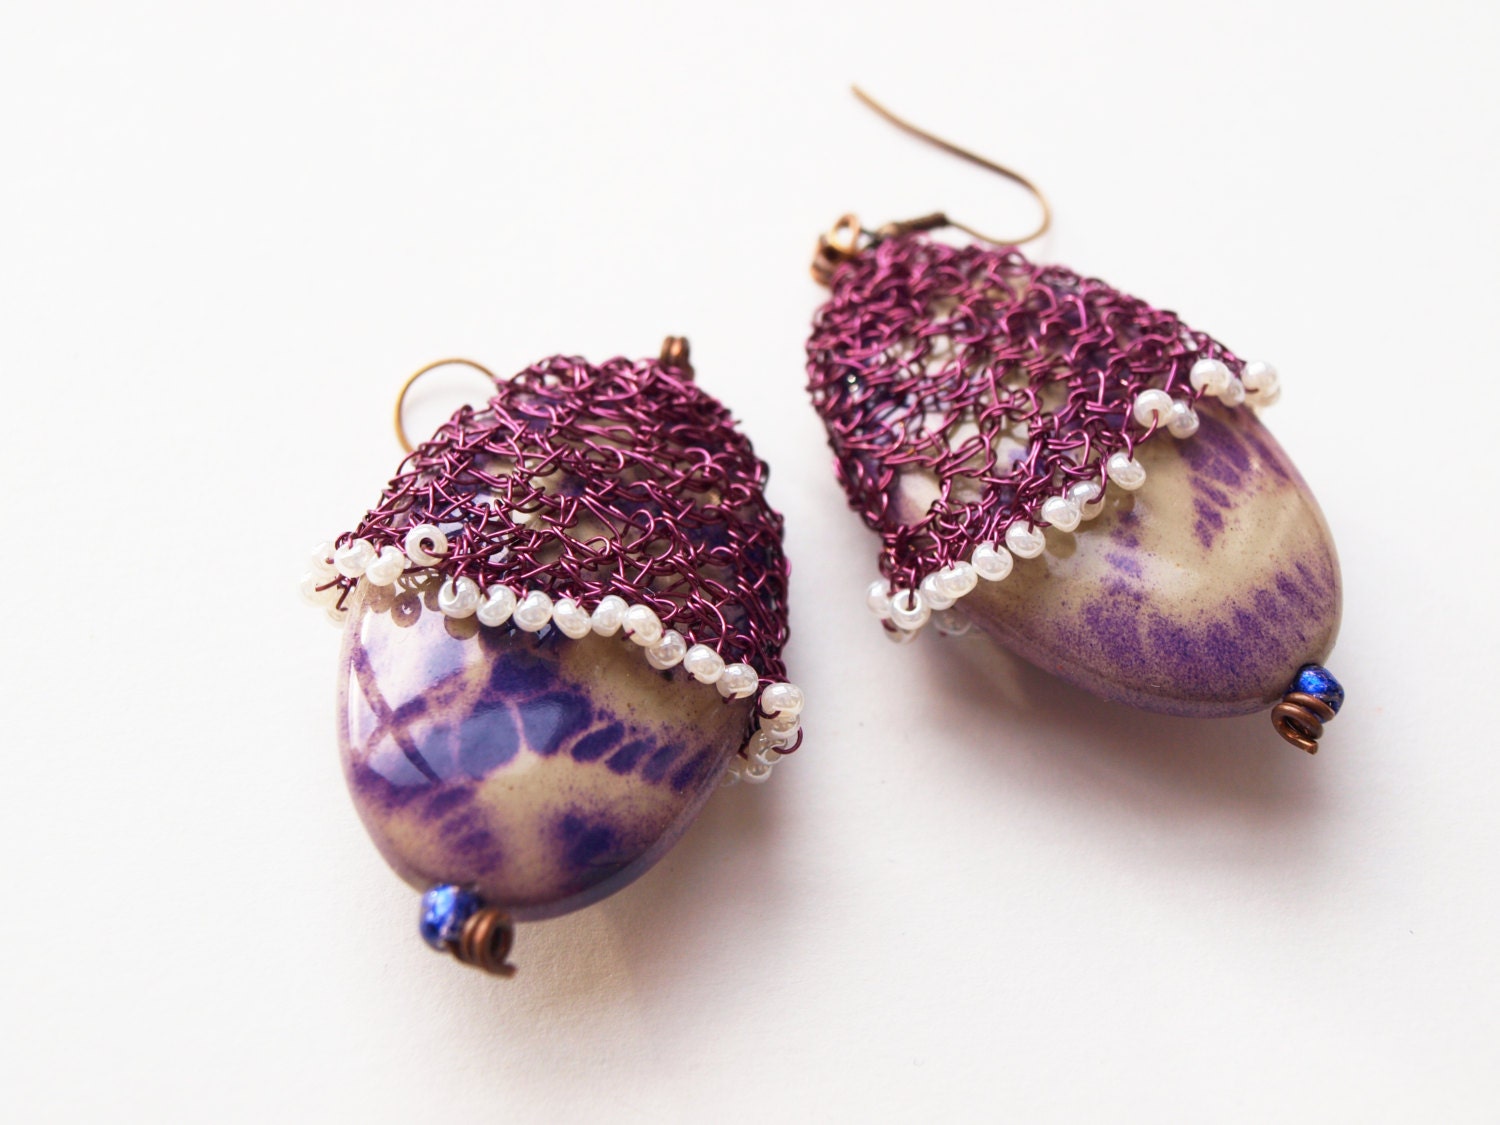 Violet wire wrapped earrings in handmade, purple seed bead wire earrings, jewelry earrings with cabochon, bead earrings seed, cabochon - RasaVilJewelry